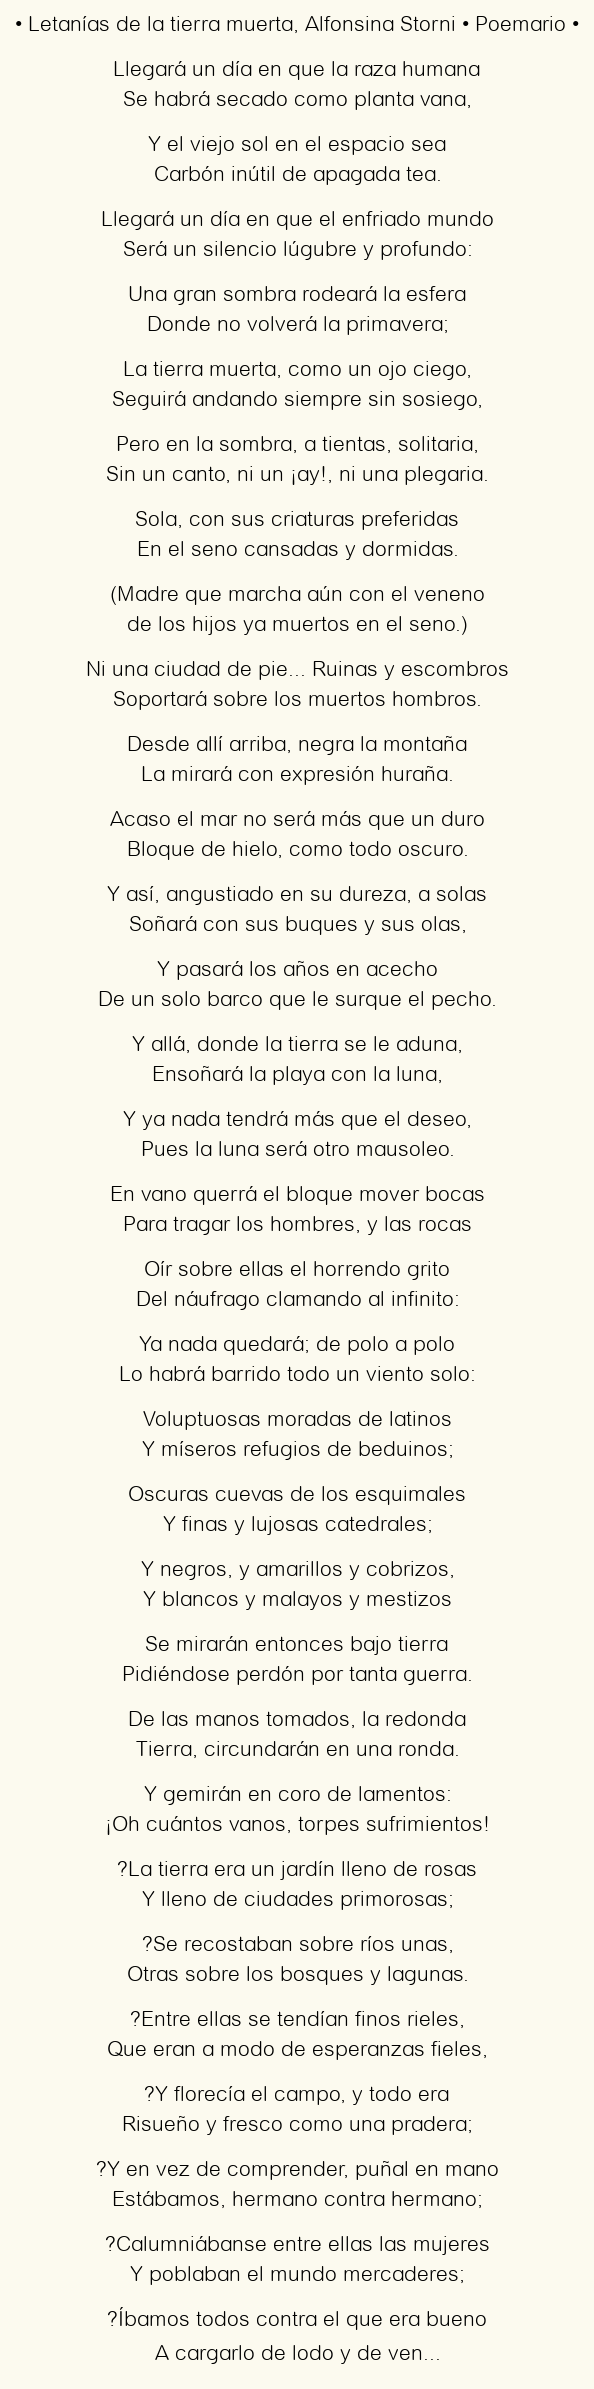 Imagen con el poema Letanías de la tierra muerta, por Alfonsina Storni